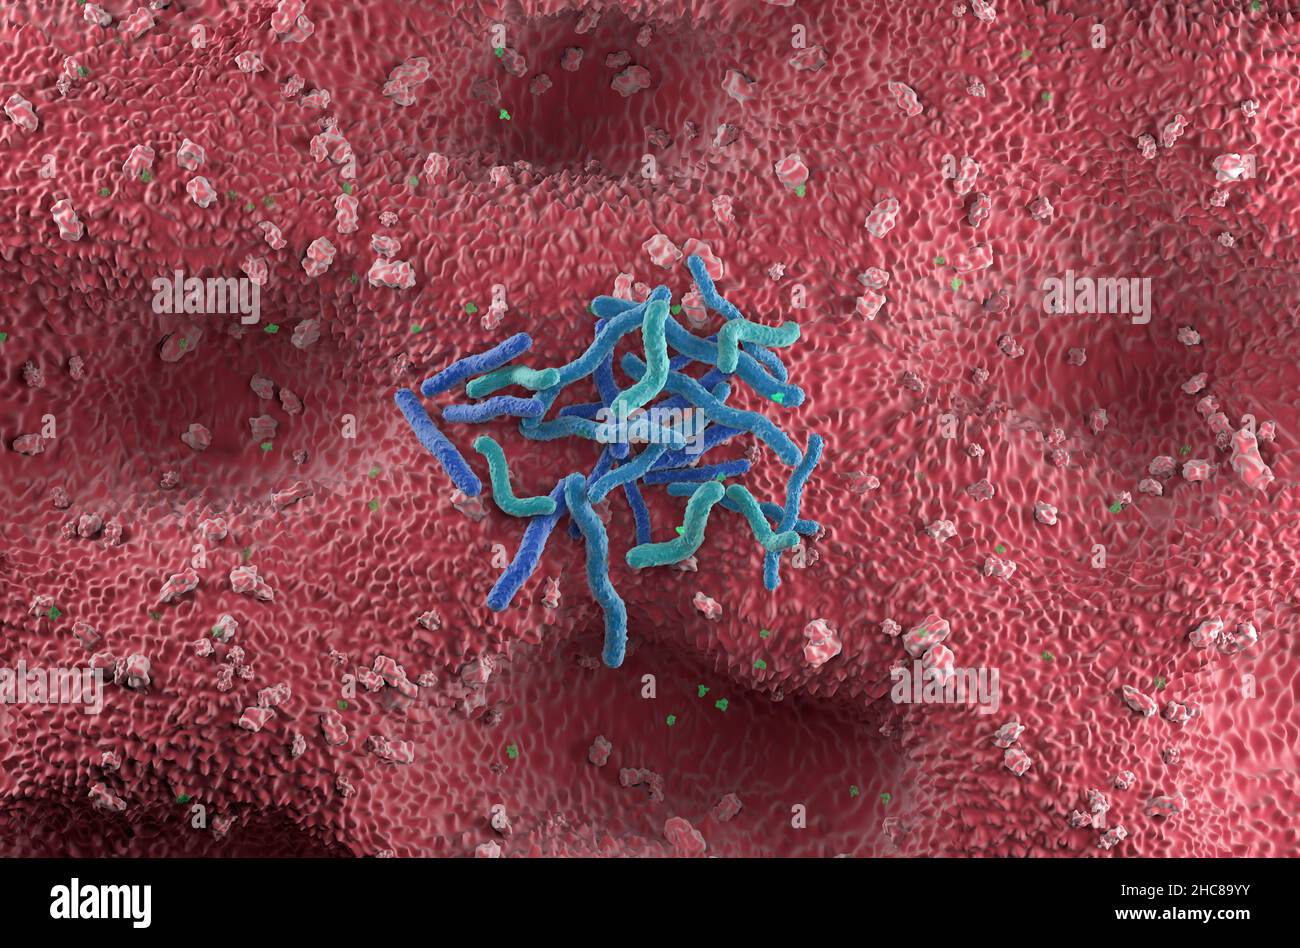 Helicobacter pylori Bakterienfeld an der Magenwand - Draufsicht 3D Abbildung Stockfoto